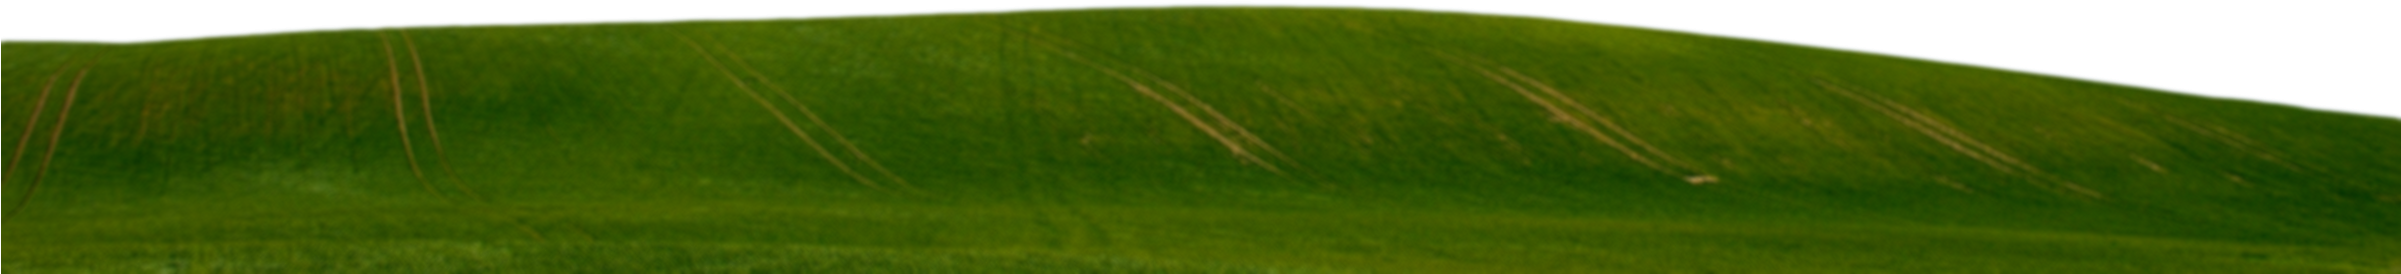 Green-grass - Grass (2400x600)